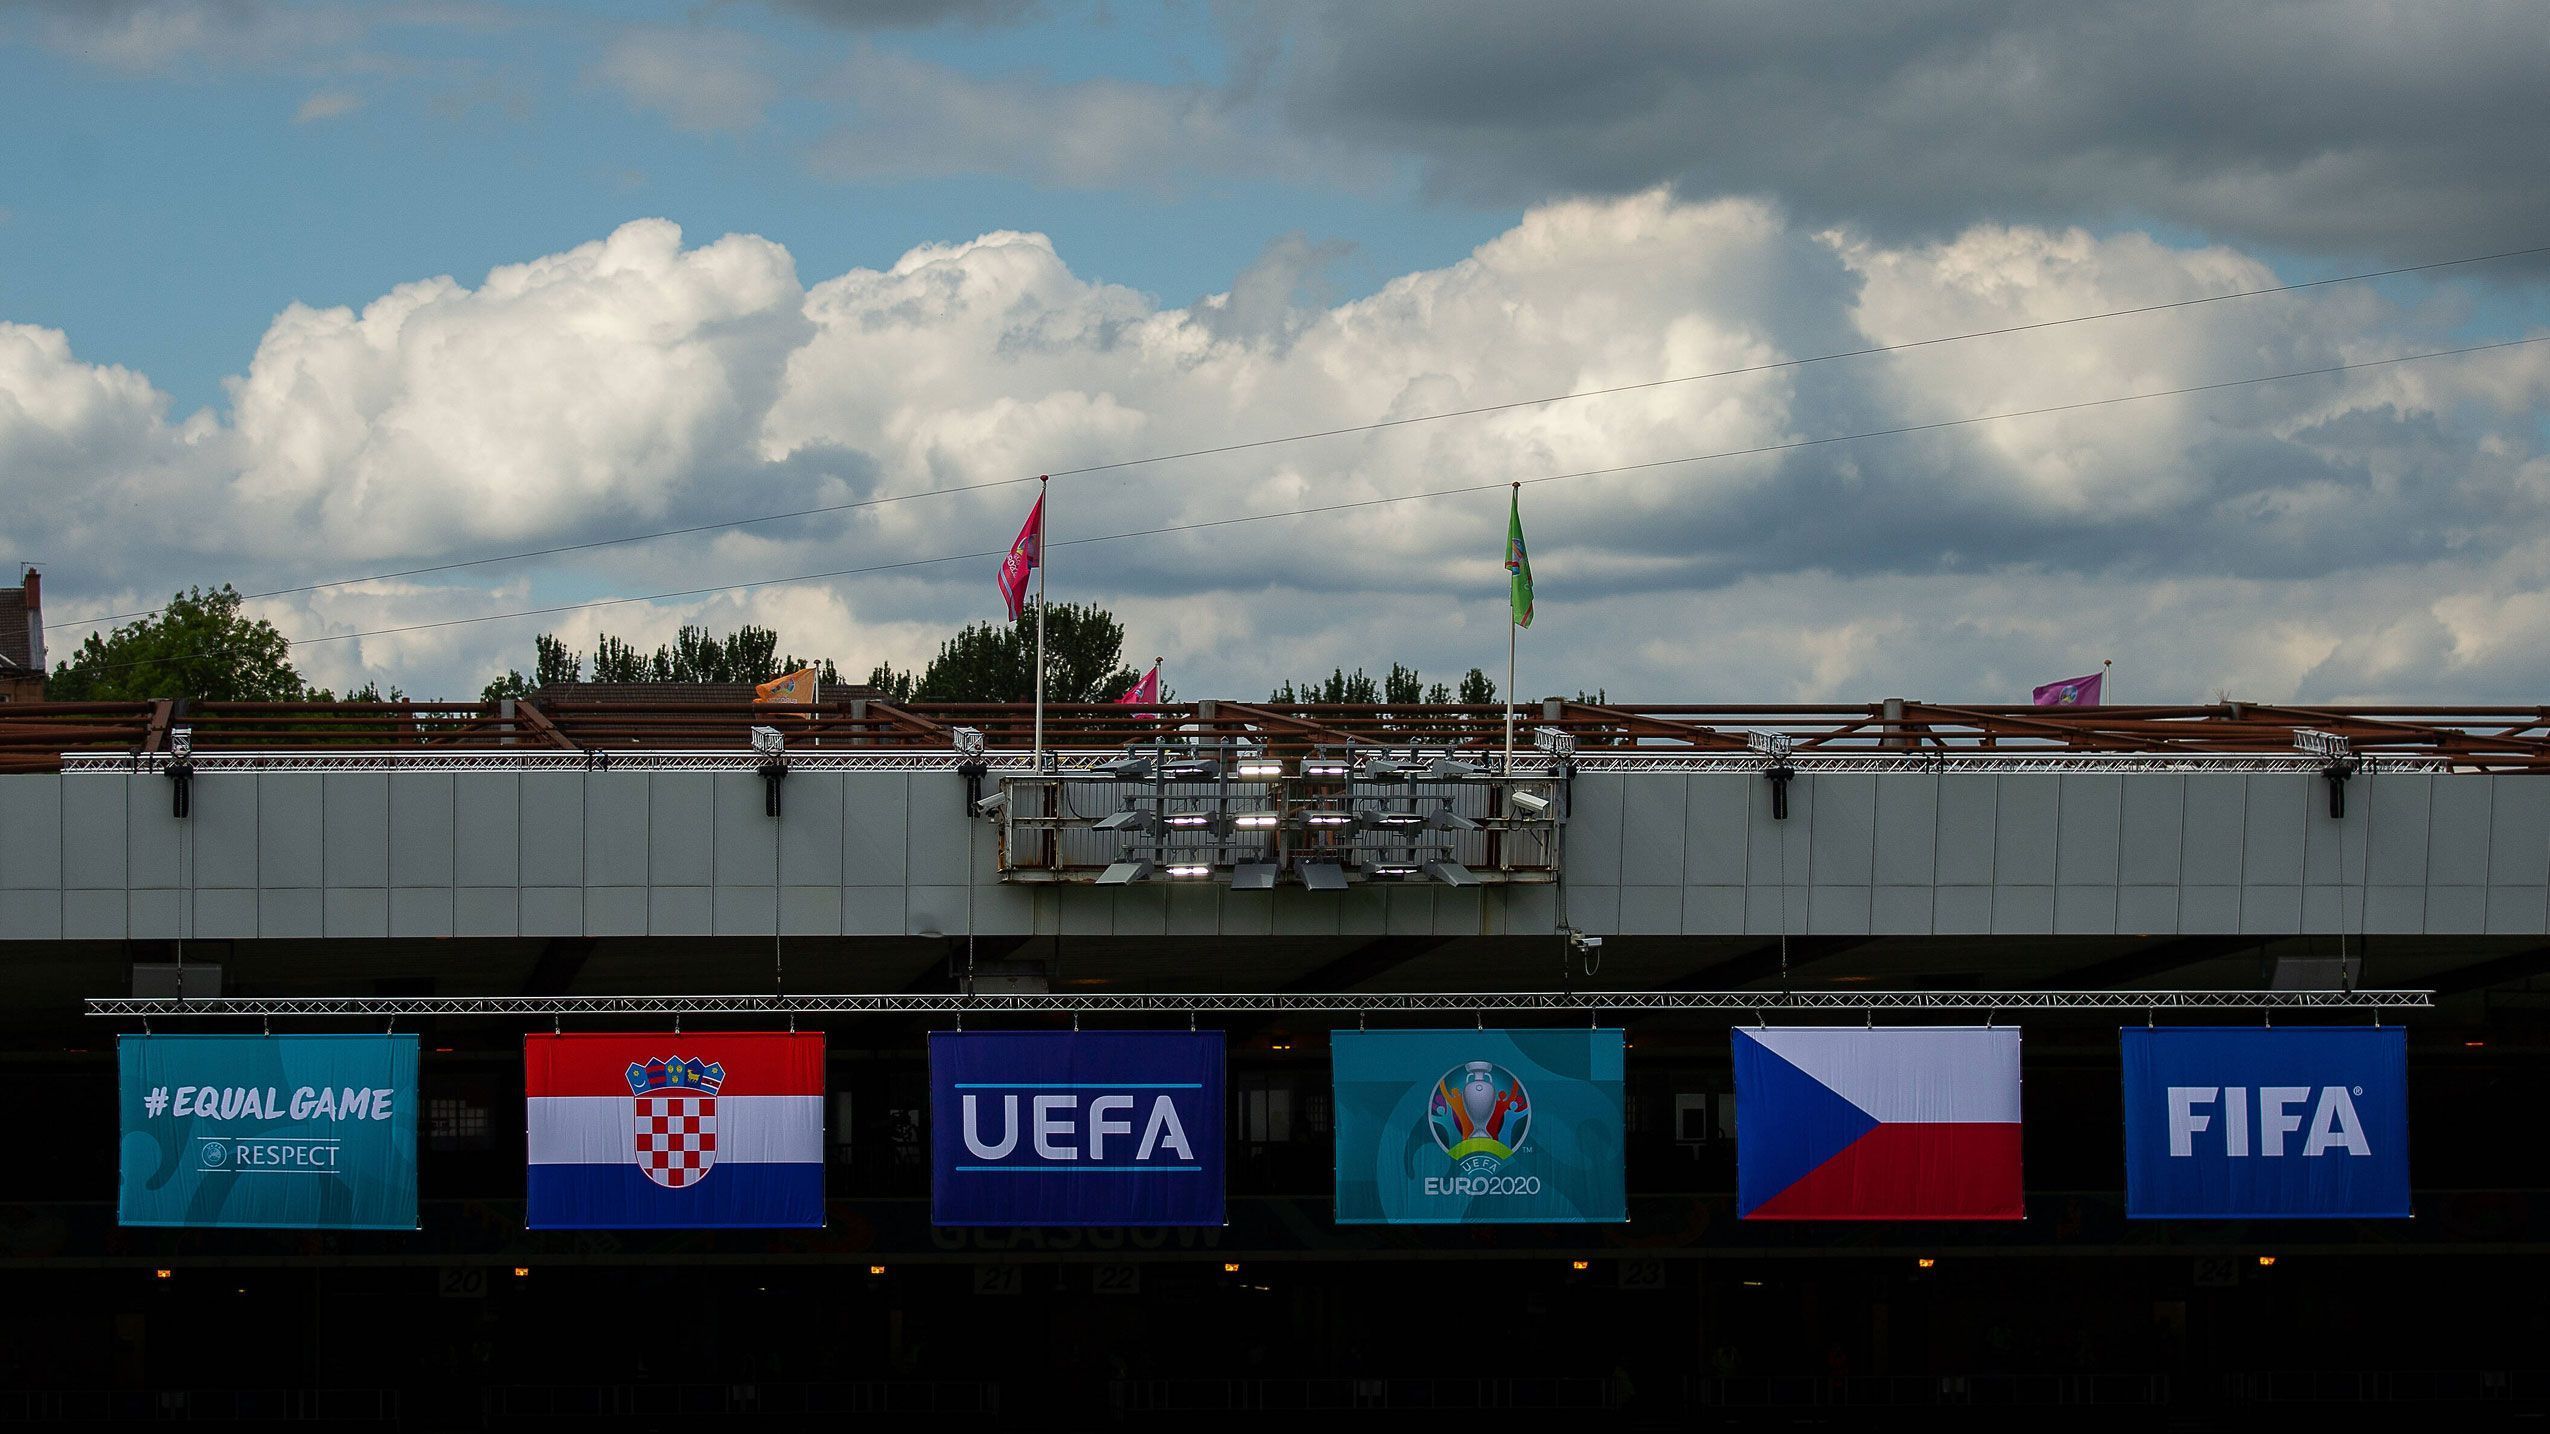 
                <strong>18:00 Uhr: Kroatien vs. Tschechische Republik</strong><br>
                Im zweiten Spiel des Abends treffen die Kroaten auf Tschechien. Kroatien hat nach der 0:1-Auftaktpleite gegen England vor allem spielerisch viel Luft nach oben und braucht dringend einen Sieg. 
              